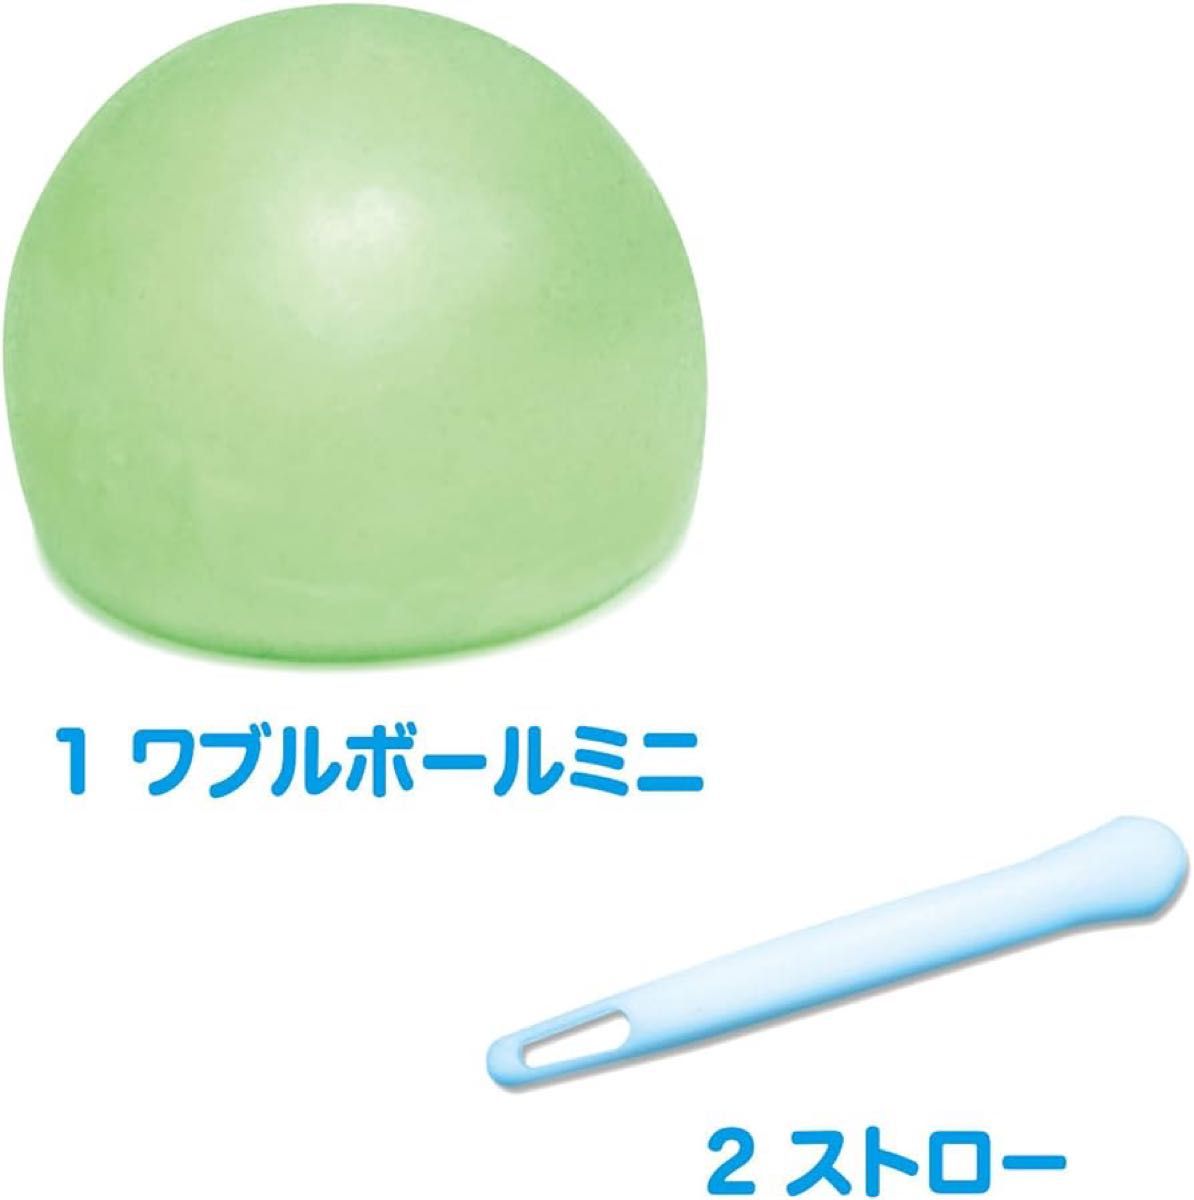 【入手困難】ワブルボールミニ ピンク 不思議な強さ シャボン玉 ボール